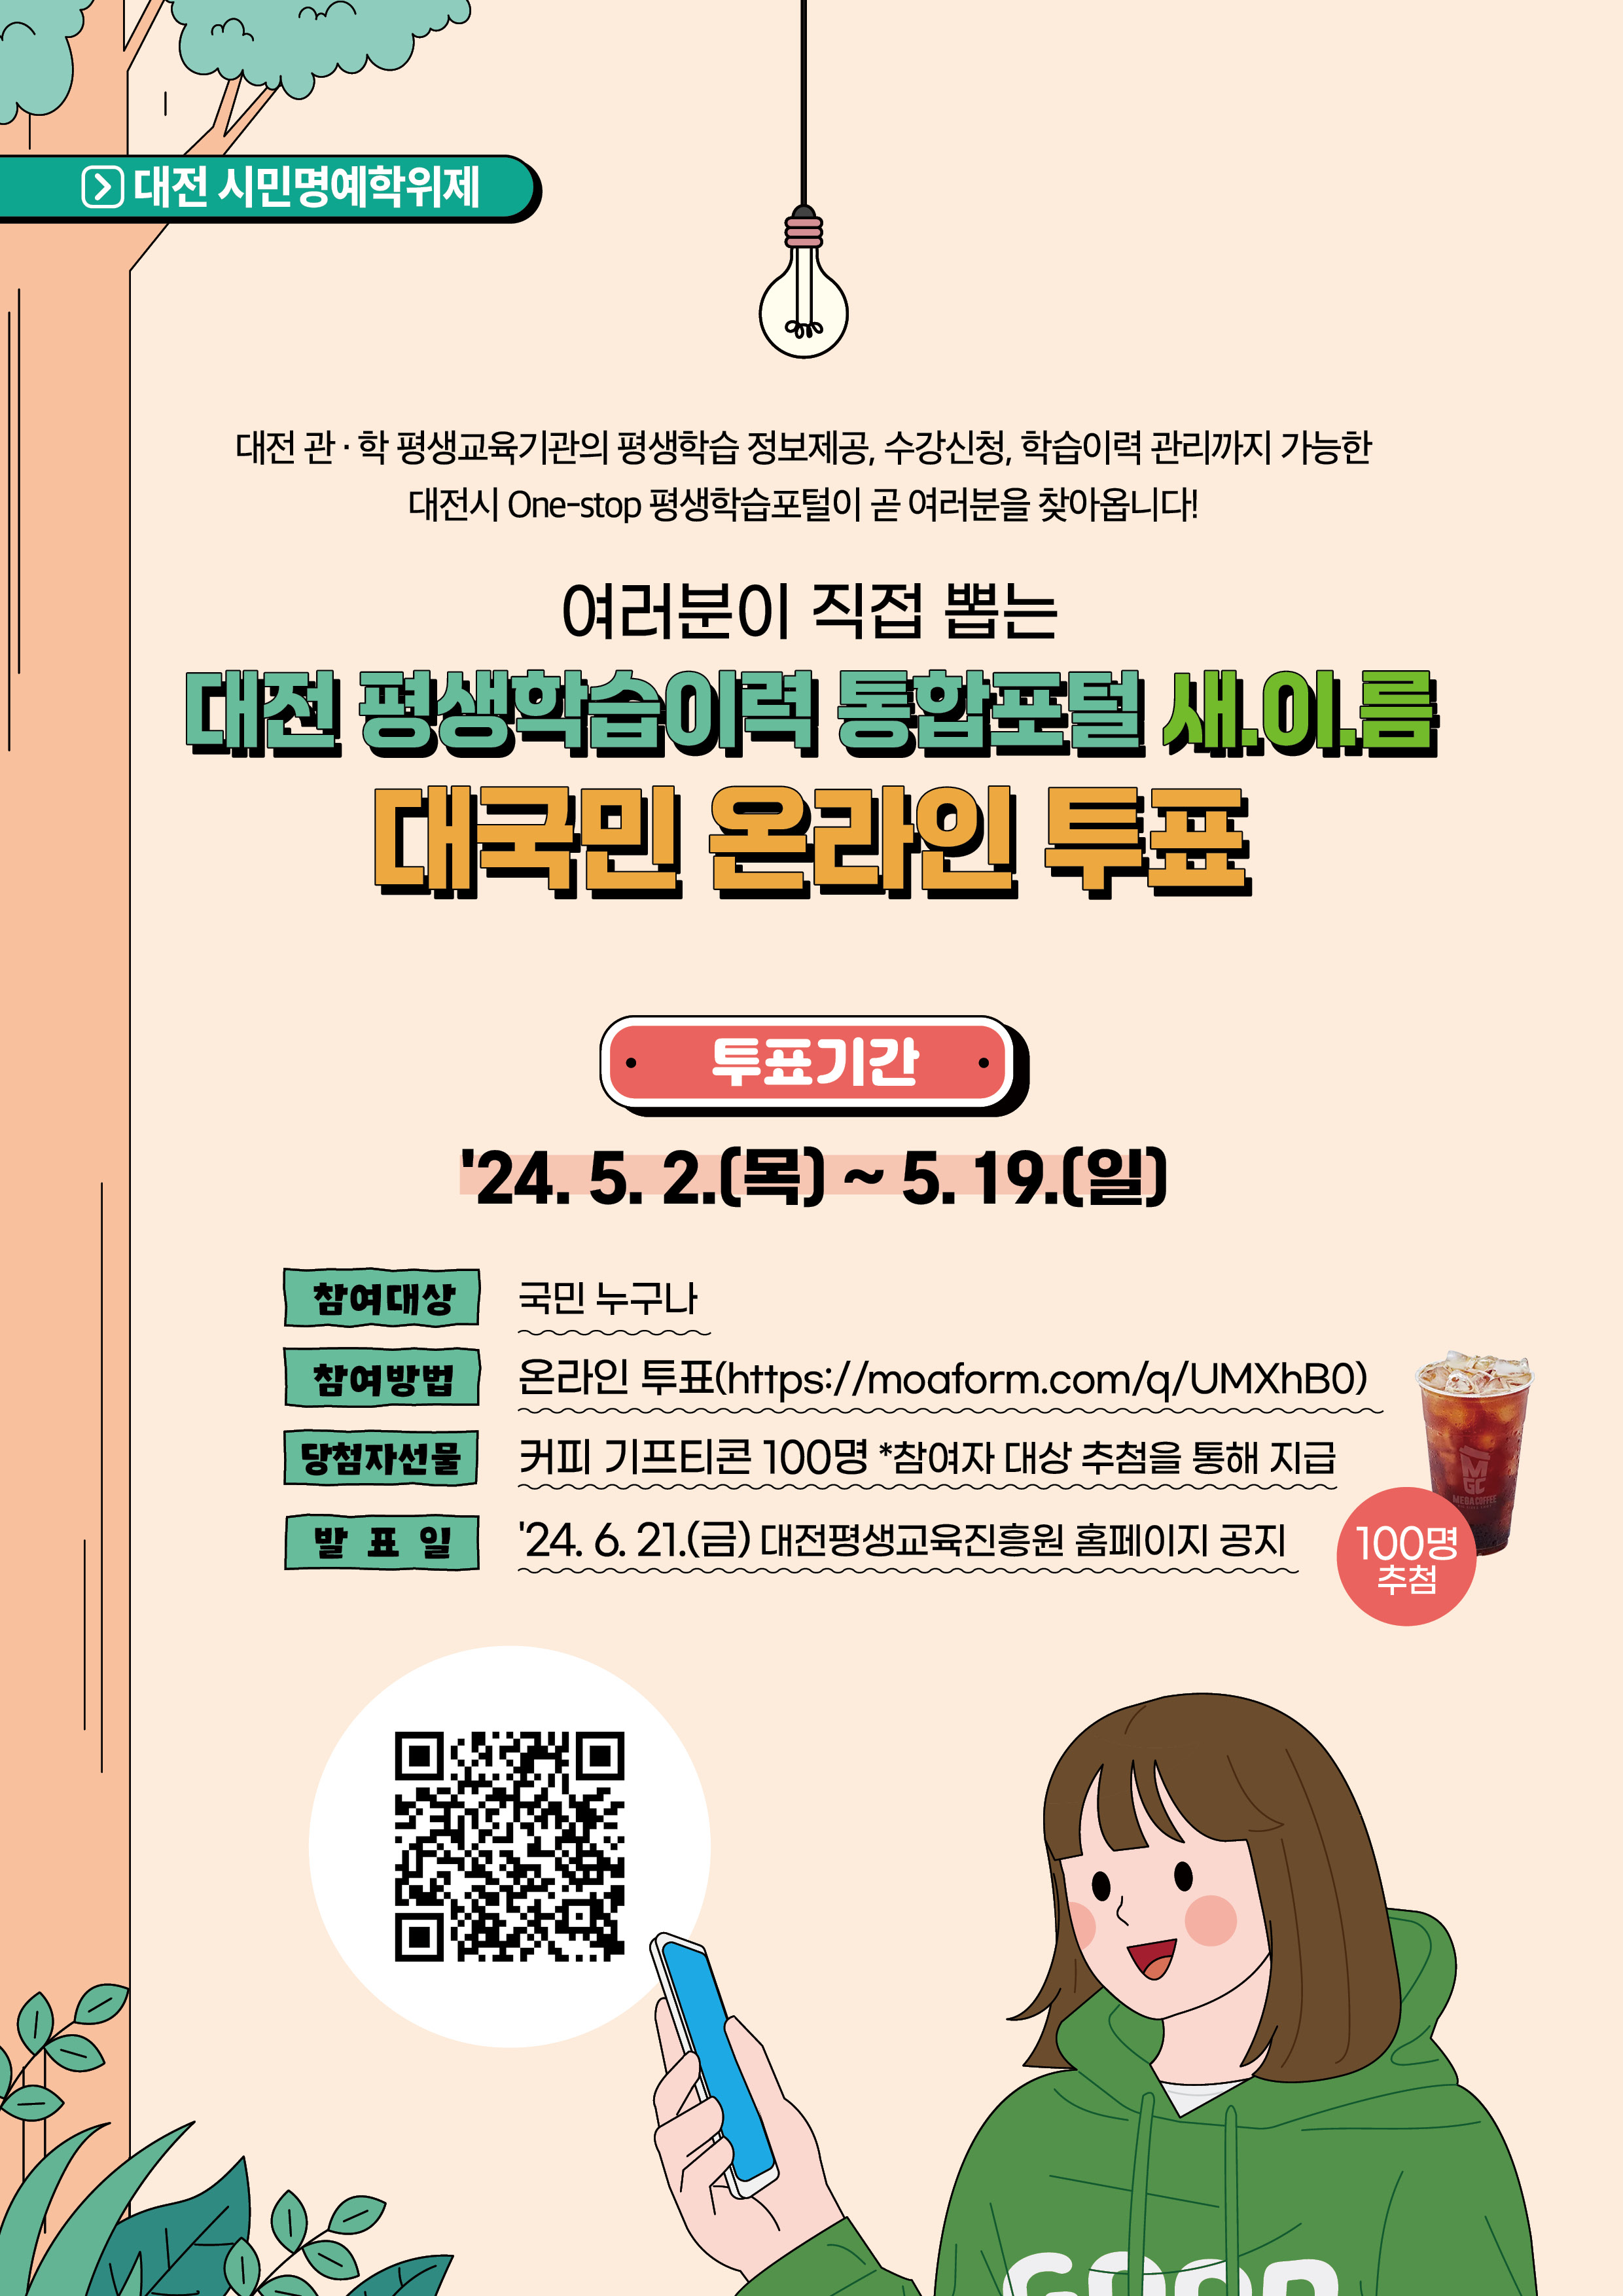 대전 평생학습이력 통합포털 명칭 온라인 투표 웹포스터.jpg